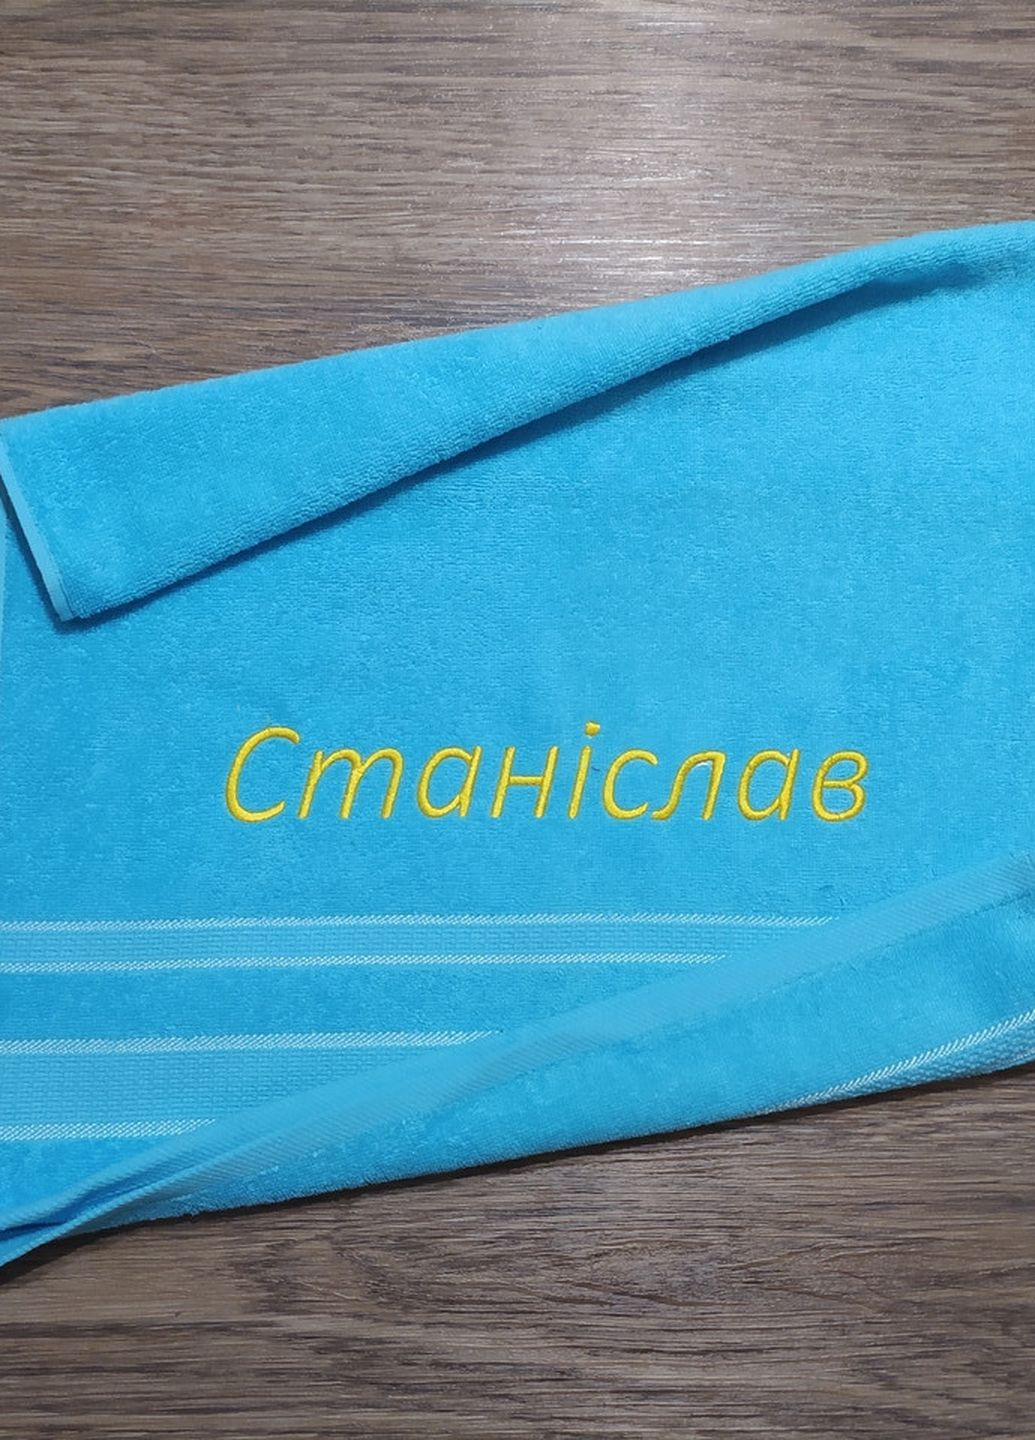 No Brand рушник з іменною вишивкою махровий для обличчя 50*90 блакитний станіслав 03765 однотонний блакитний виробництво - Україна